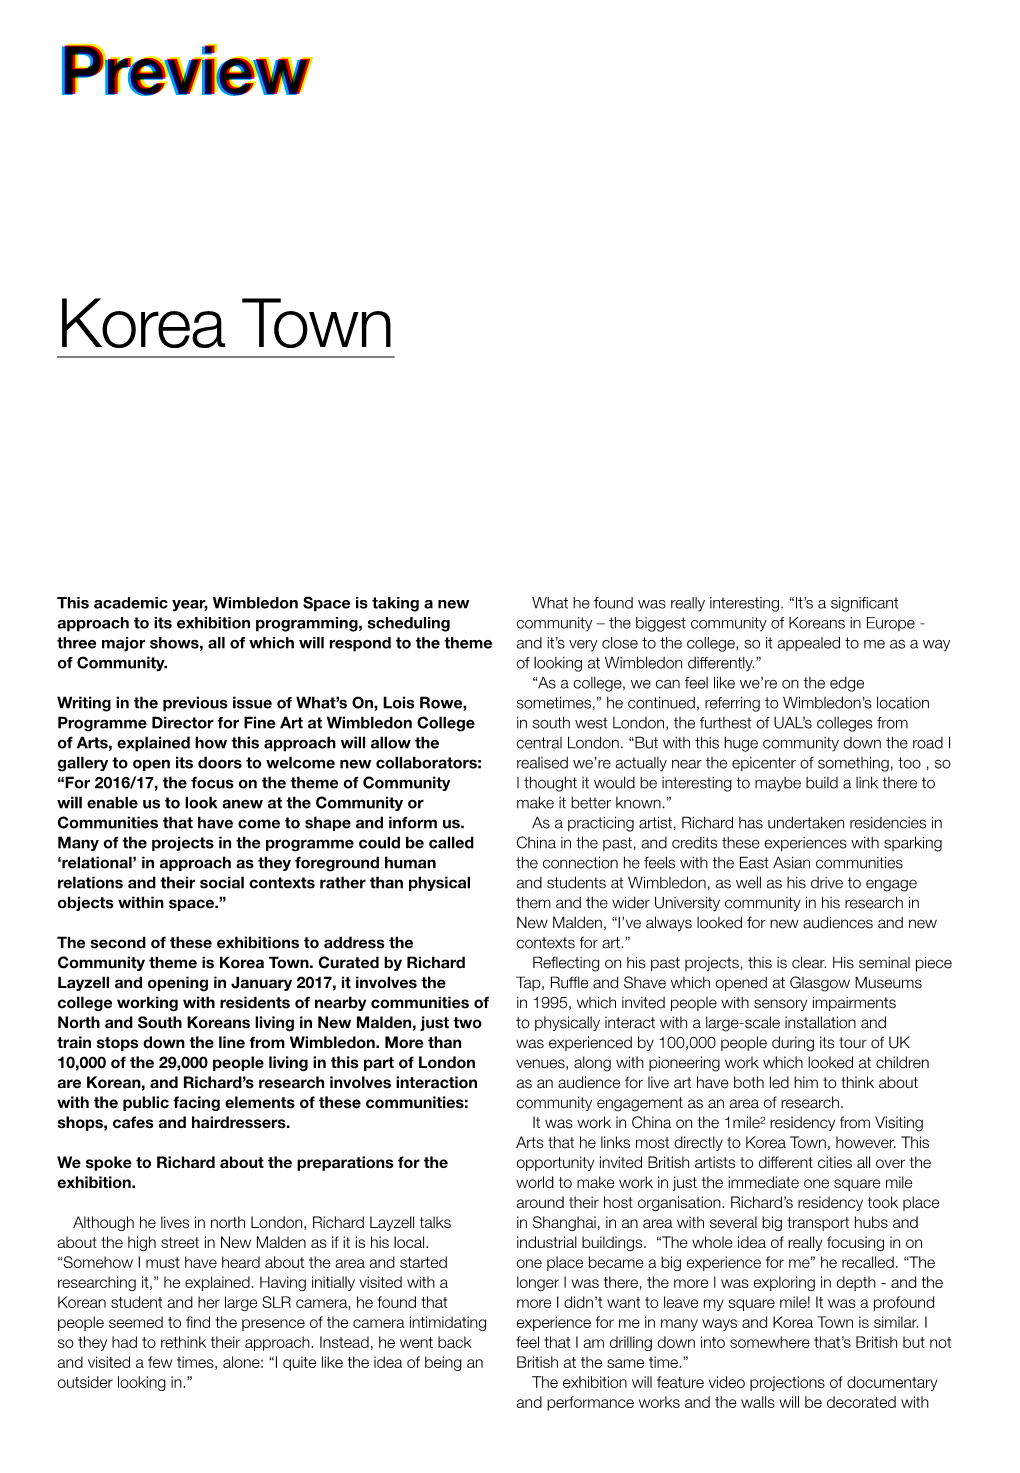 Korea Town Preview